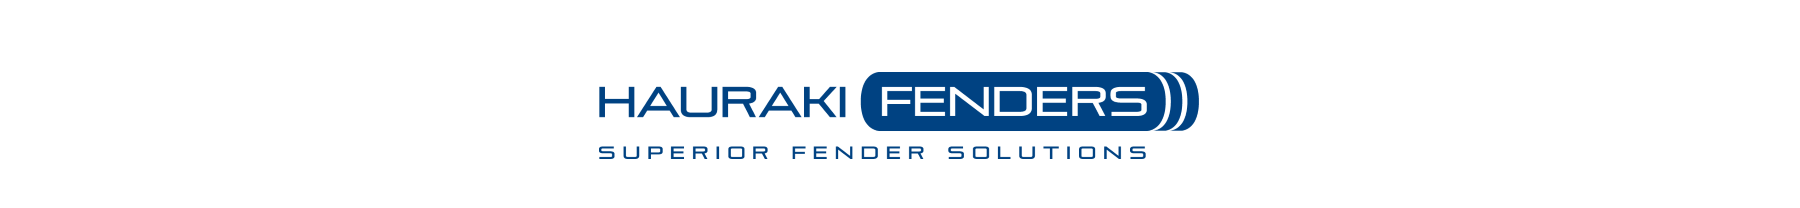 Hauraki Fenders Logo - wide